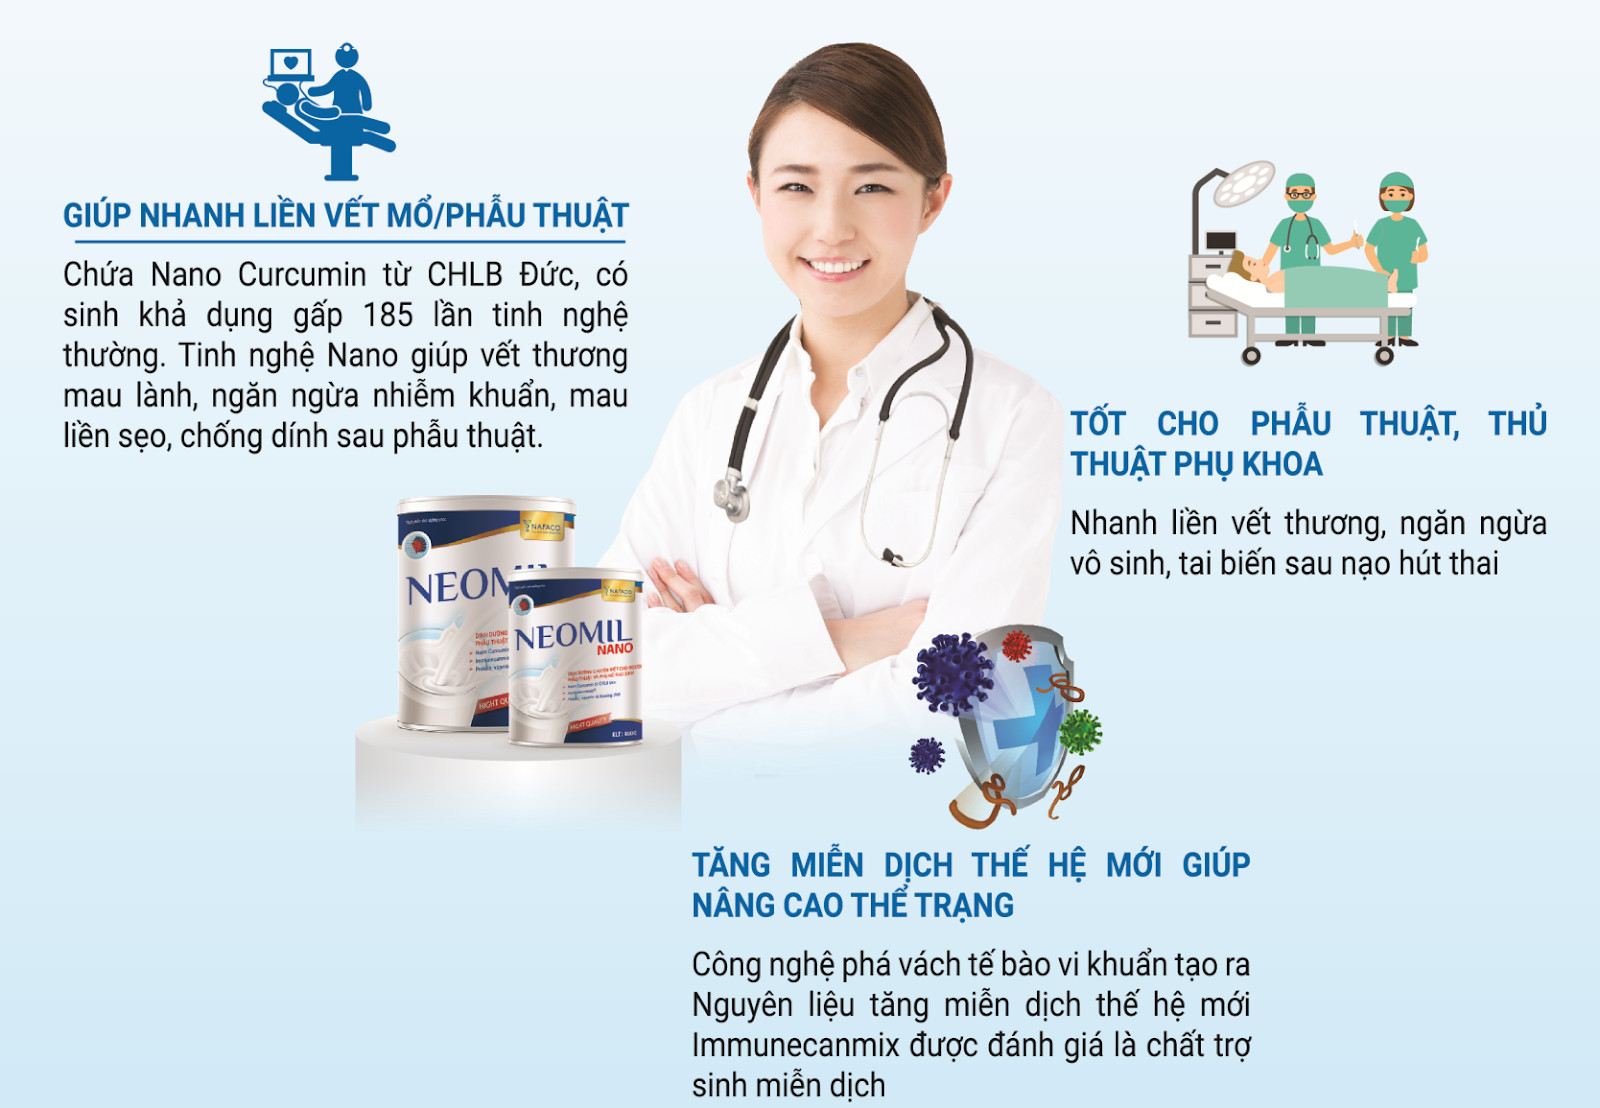 Sữa chuyên biệt cho người phẫu thuật Neomil Hộp 900g hàng chính hãng nhiều Bệnh viện lớn kê đơn